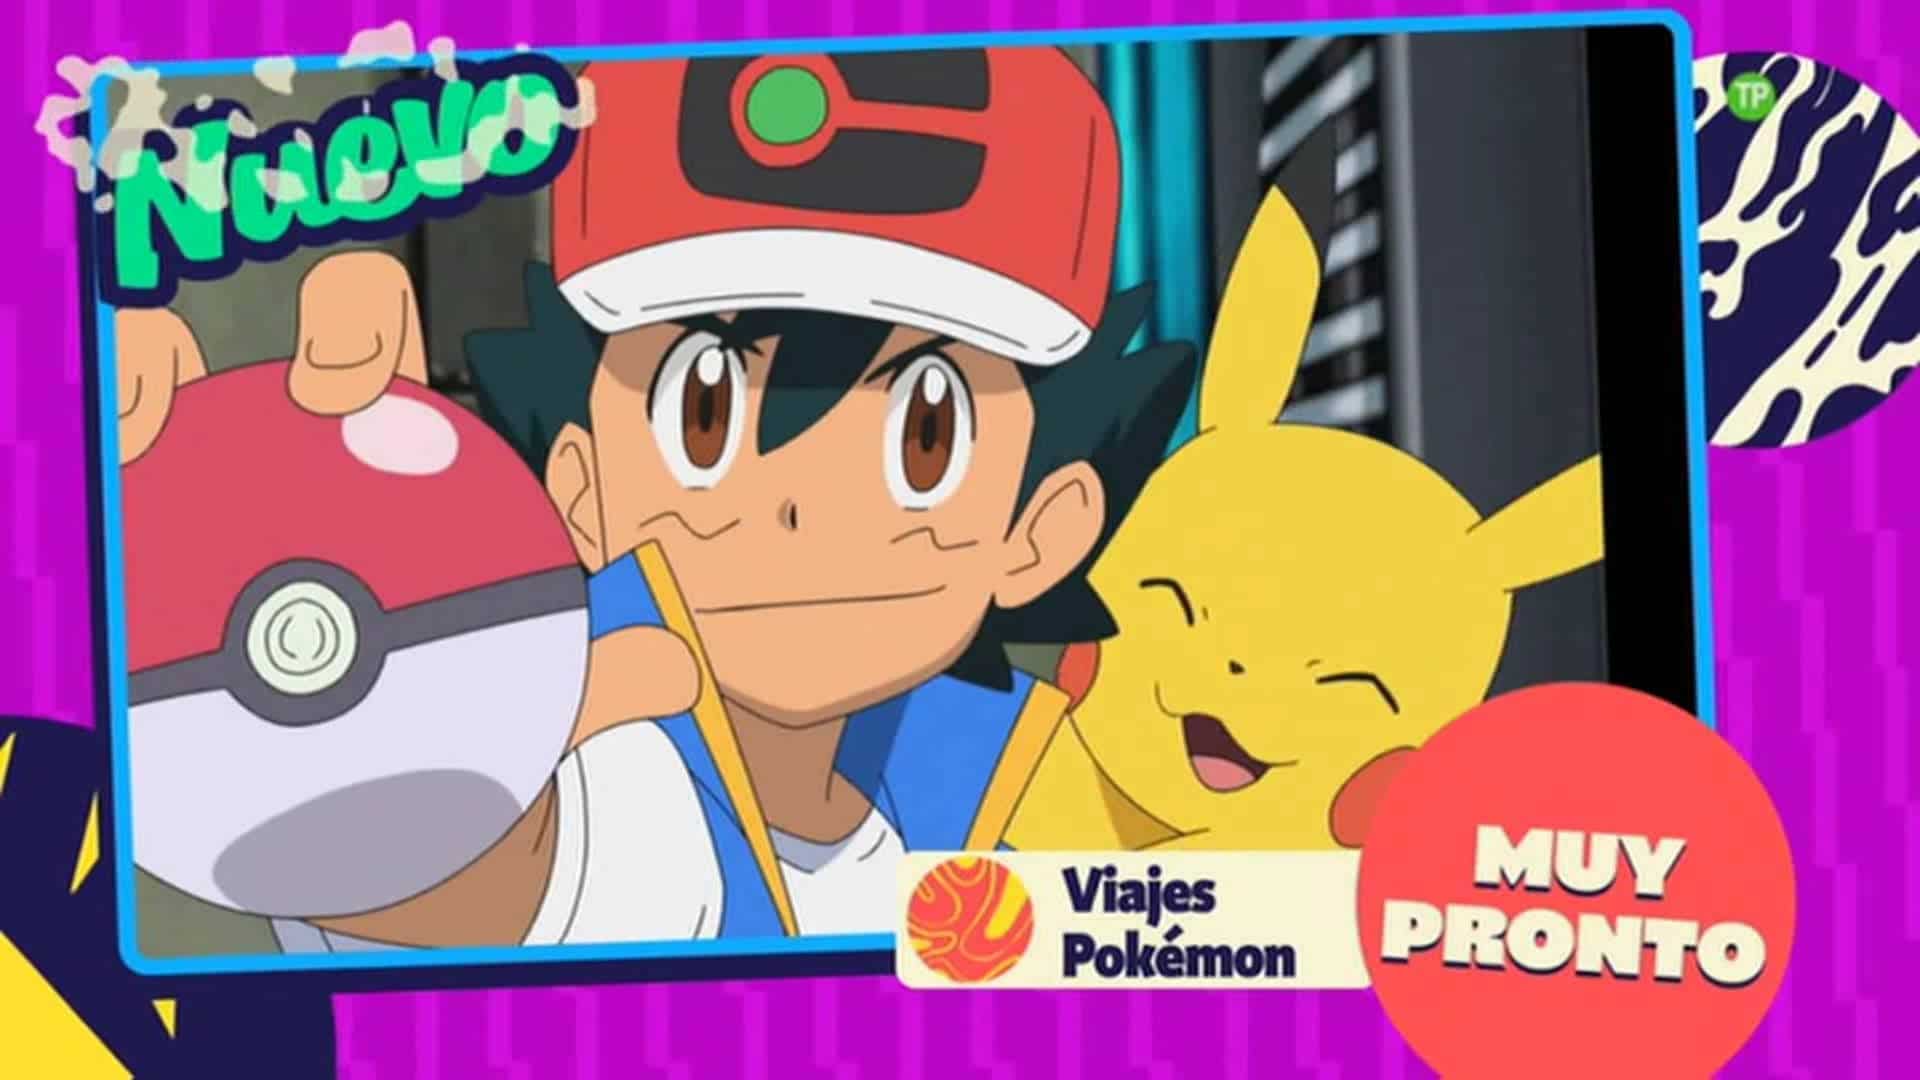 Primer vídeo promocional del anime Viajes Pokémon en Boing para España